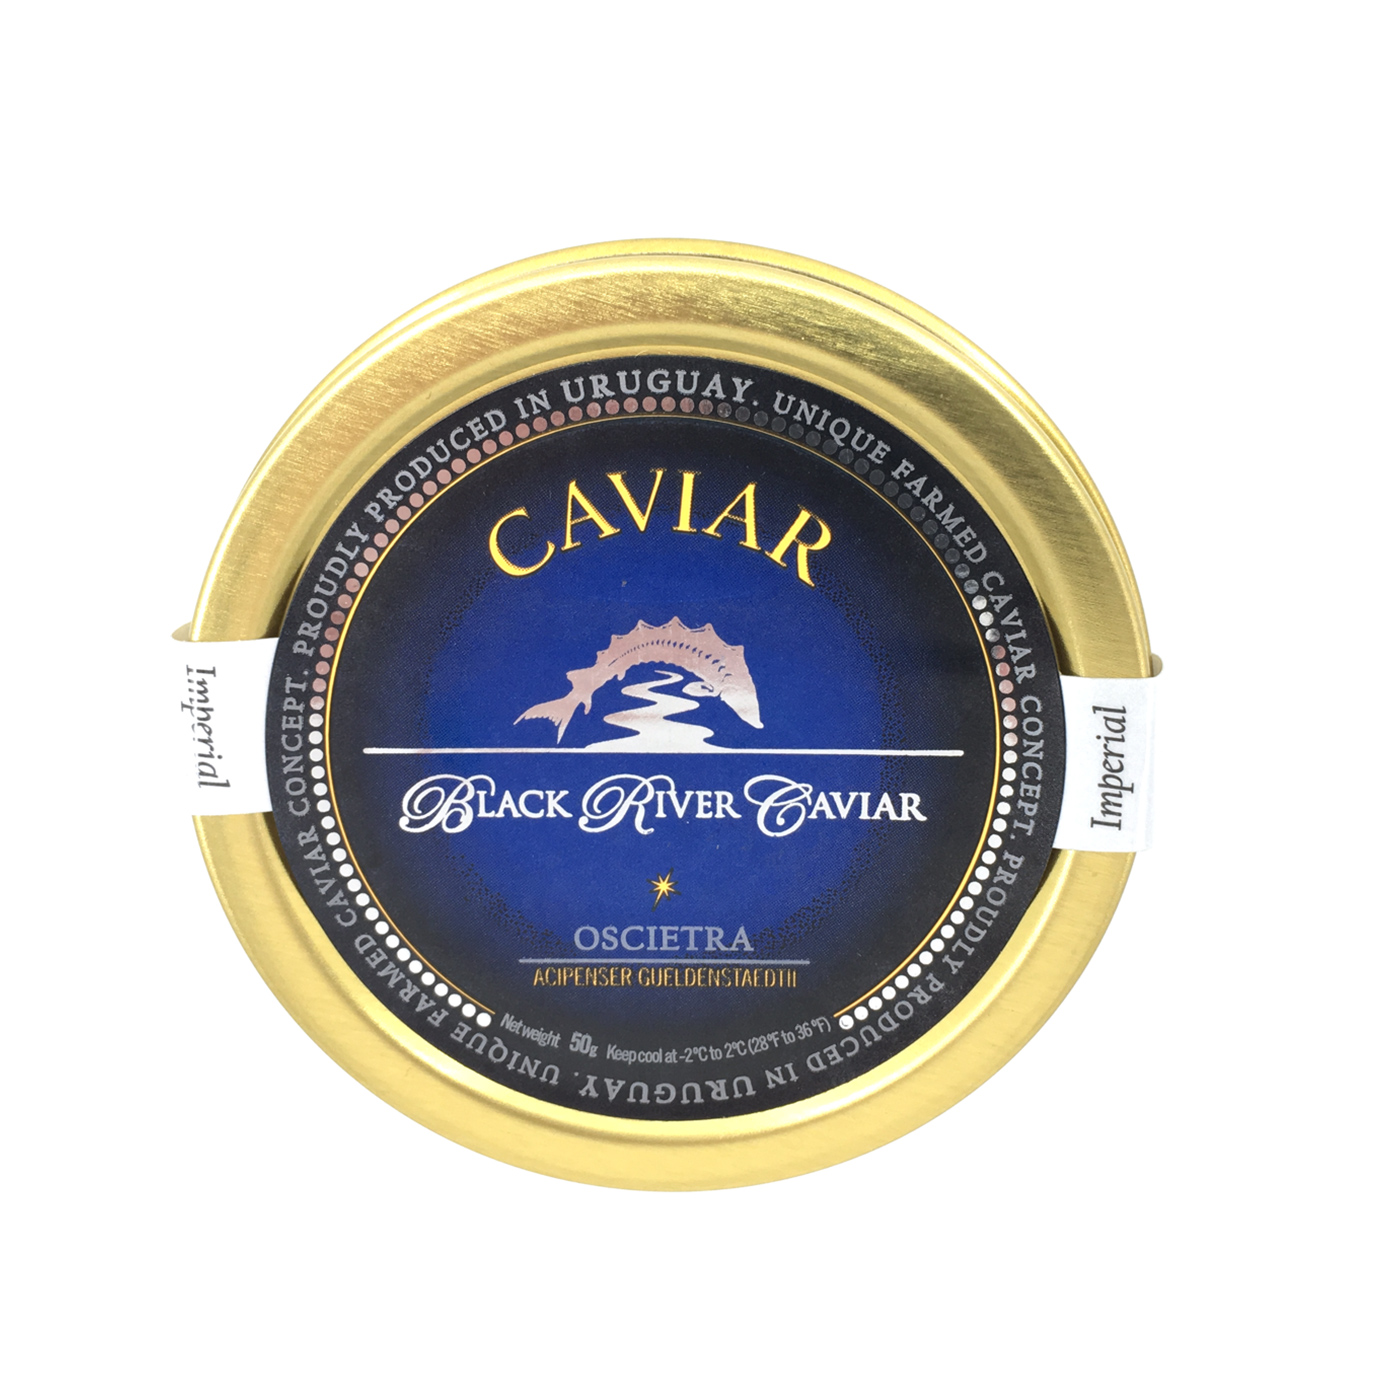 Imperial Oscietra Caviar - Black River Caviar